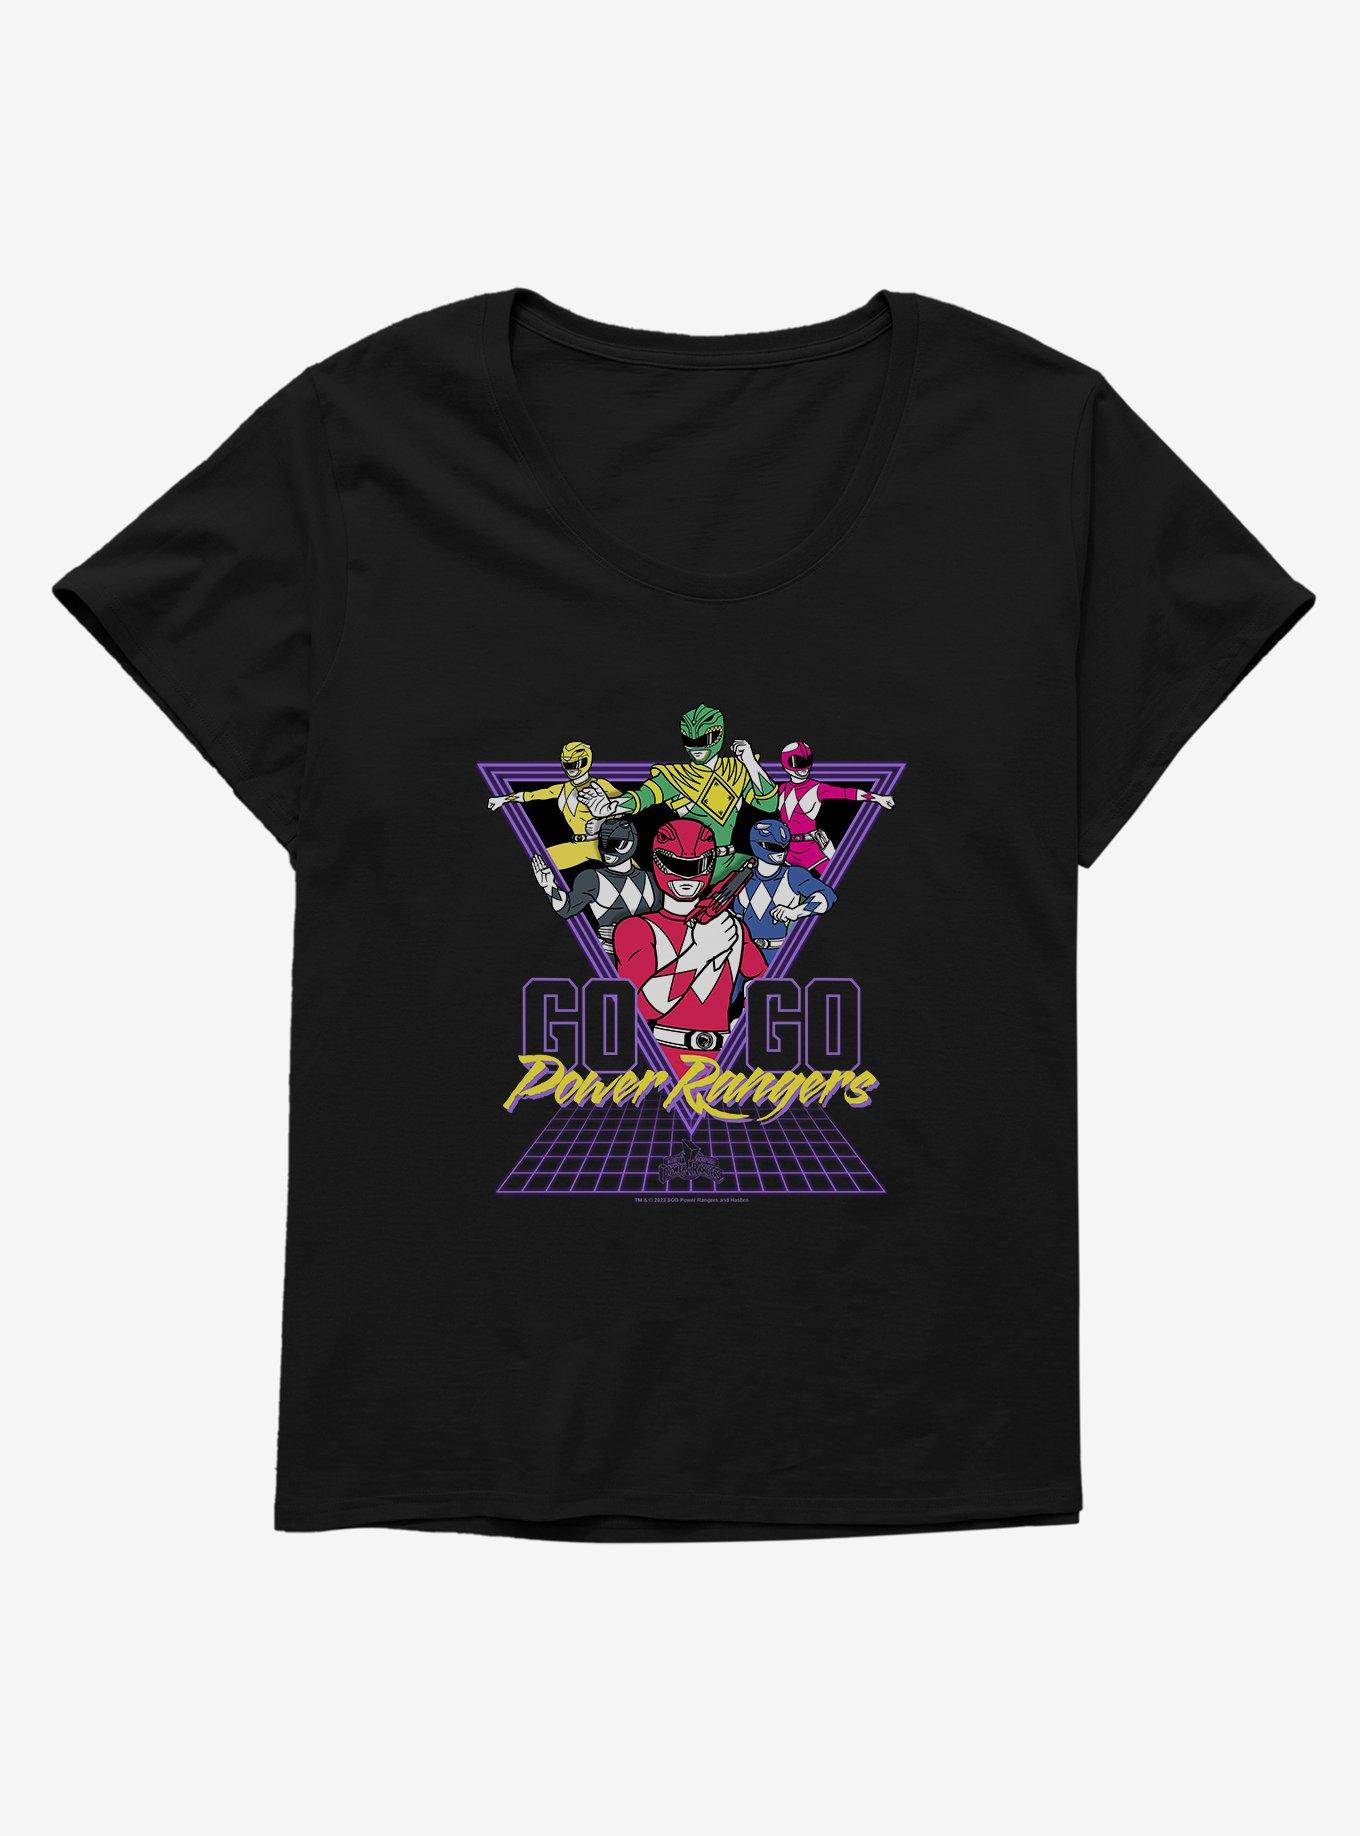 Mighty Morphin Power Rangers Go Retro Girls T-Shirt Plus